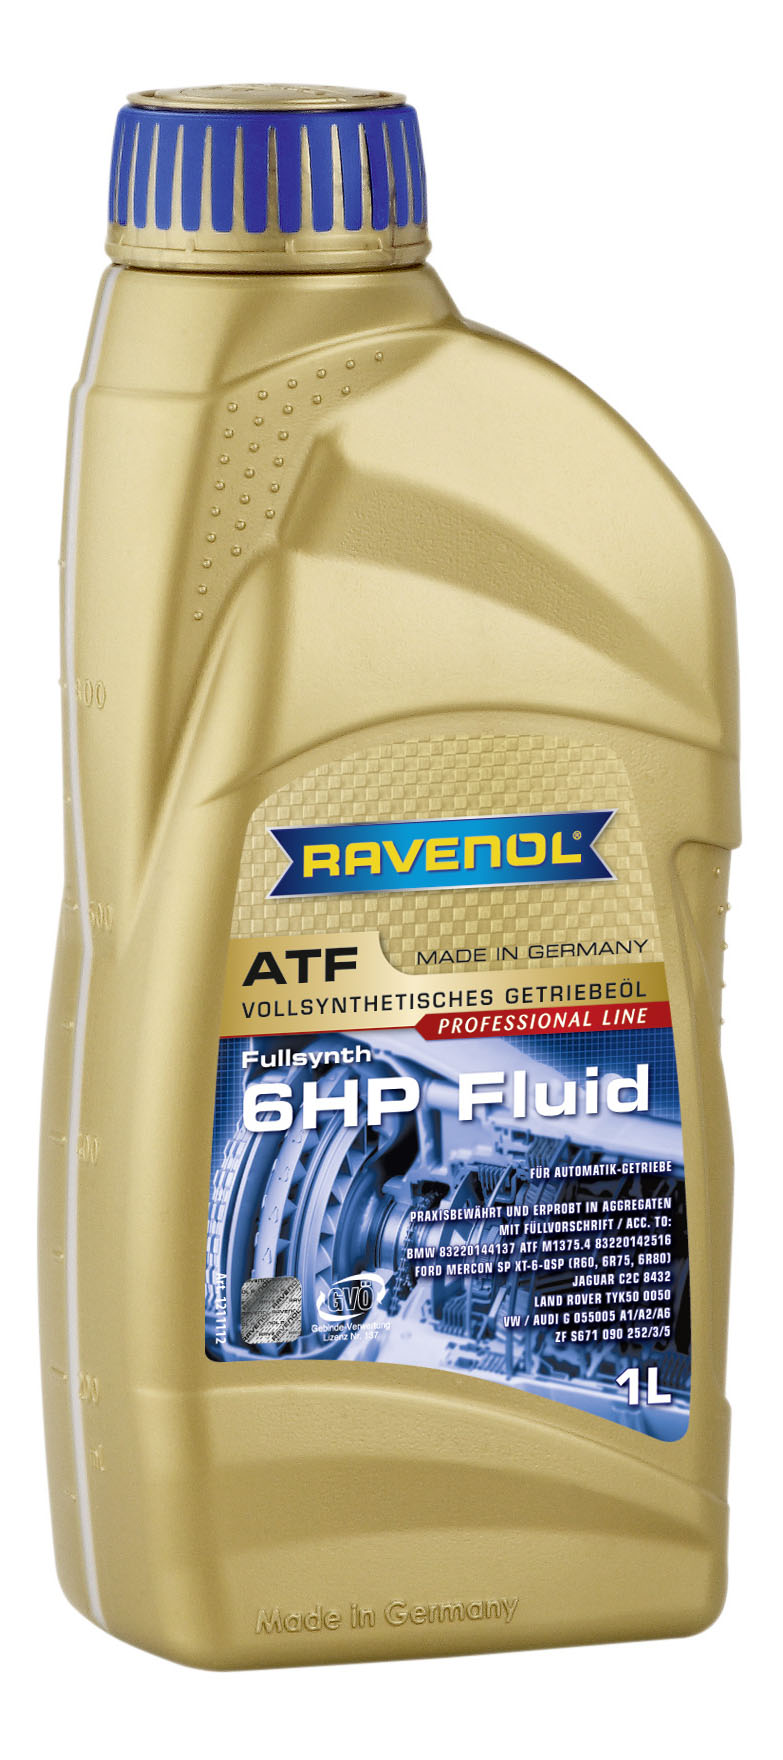 фото Трансмиссионное масло ravenol atf 6 hp fluid 1л 1211112-001-01-999